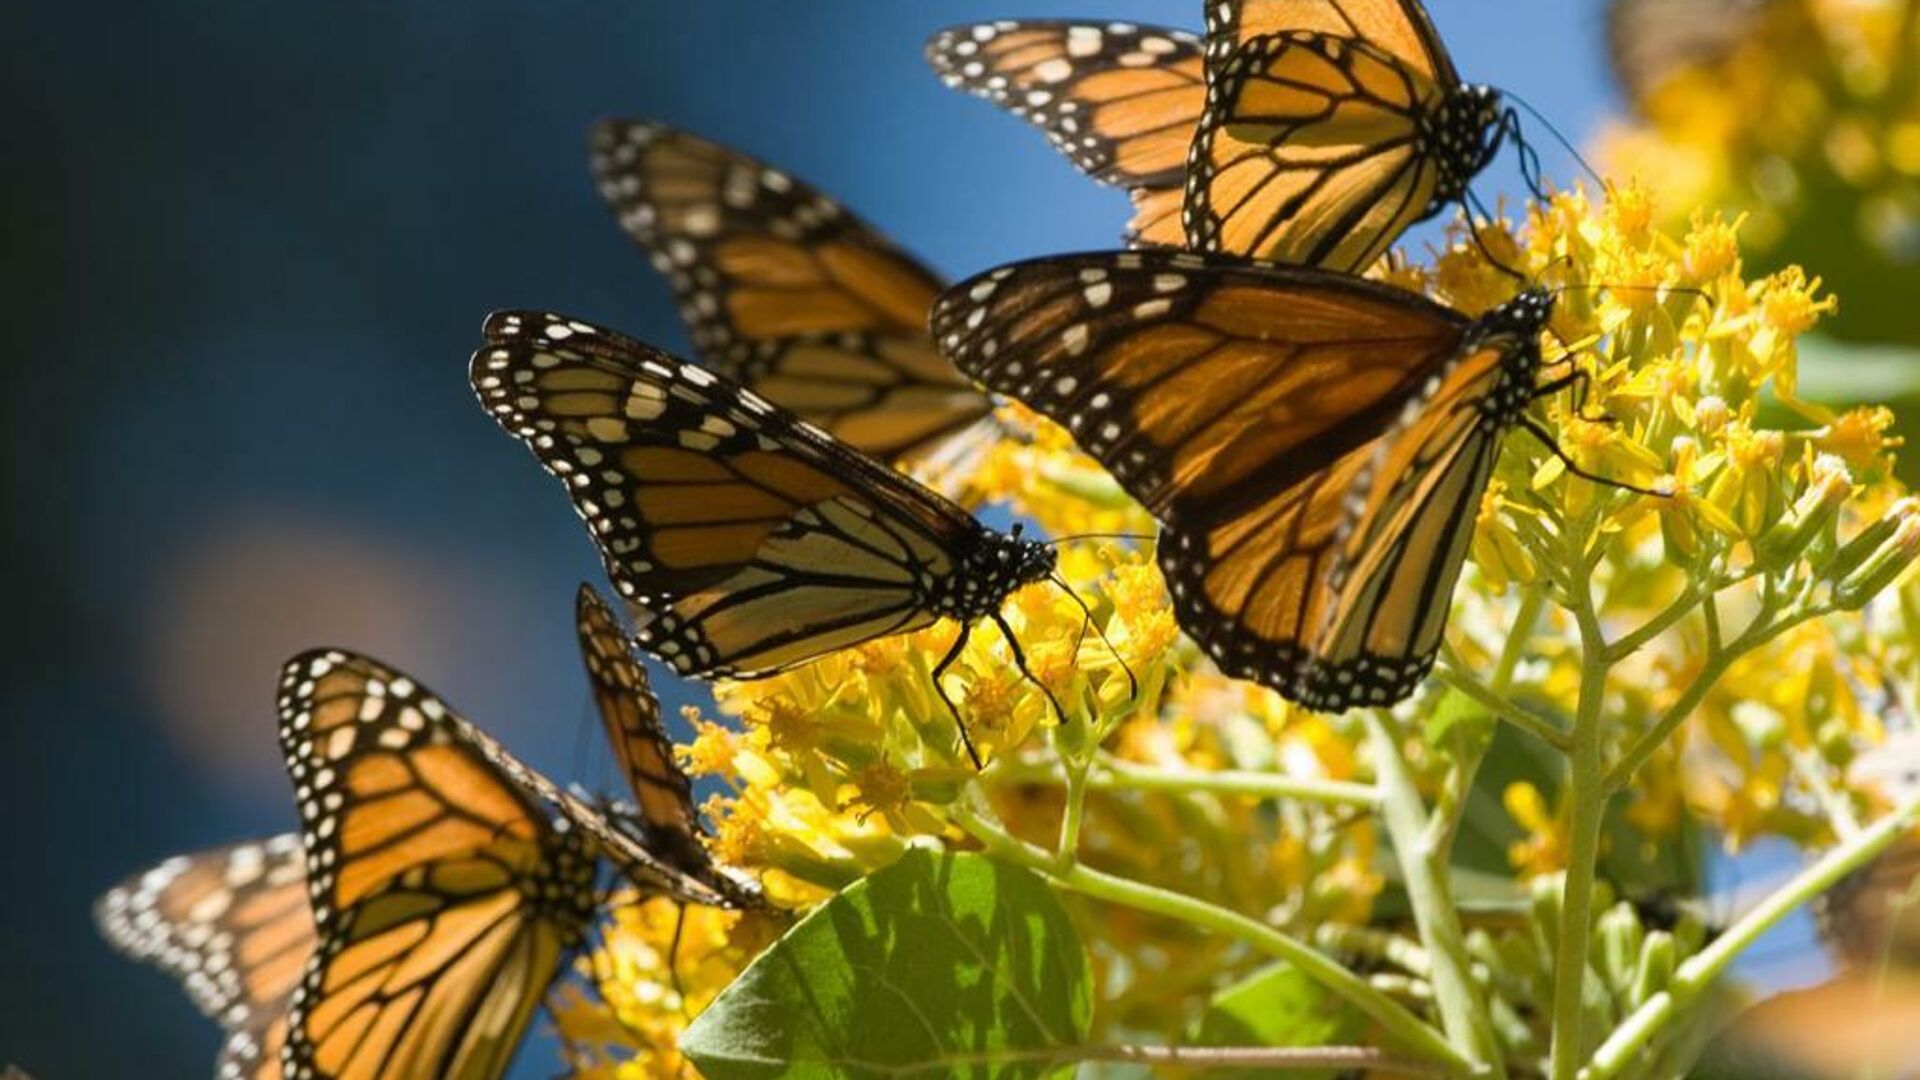 Mariposas monarca en los bosques del centro de México.  - Sputnik Mundo, 1920, 14.12.2021